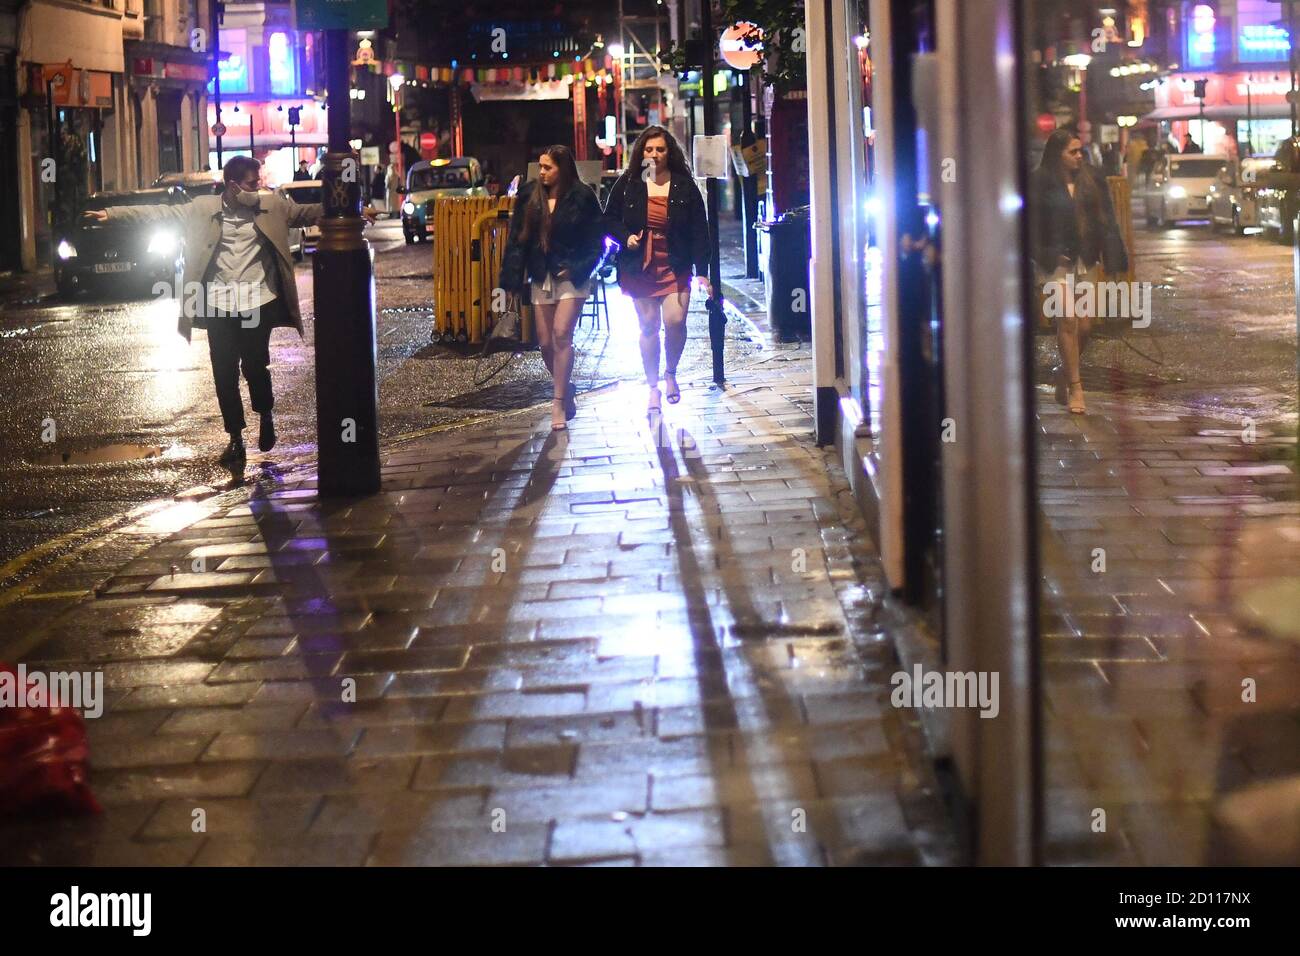 Die Menschen beginnen Soho, London, zu verlassen, aufgenommen um 22:08 Uhr, nach der Sperrstunde um 22 Uhr, die Pubs und Restaurants ausgesetzt sind, um den Anstieg der Coronavirus-Fälle in England zu bekämpfen. Stockfoto